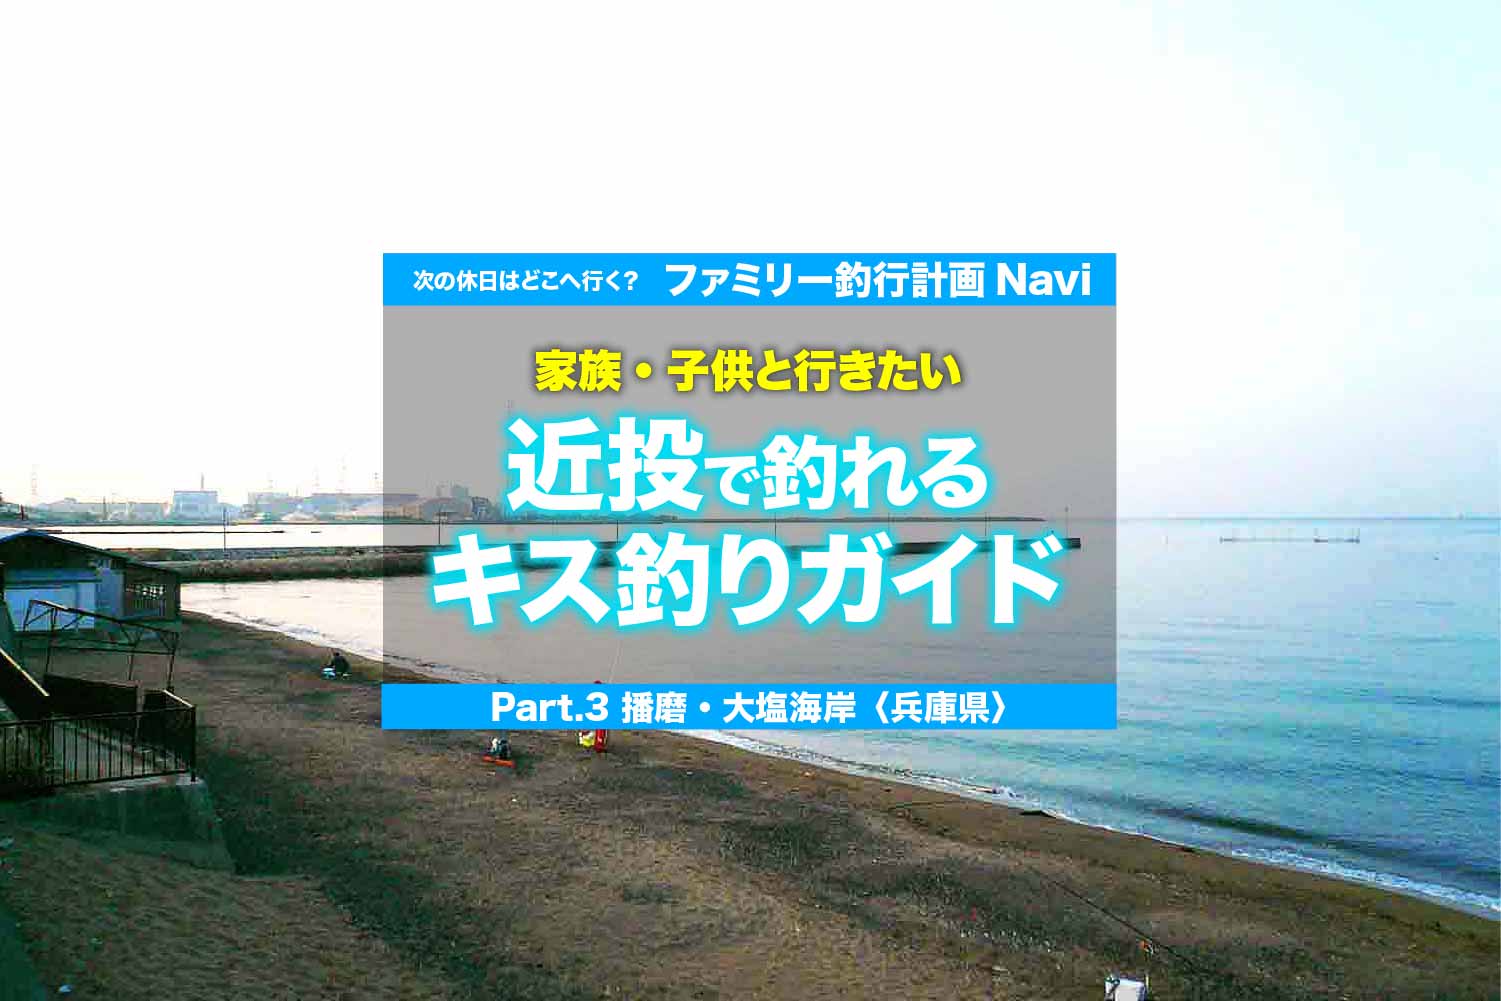 簡単 近投で釣れるキス釣りガイド 播磨 大塩海岸 兵庫県 関西のつりweb 釣りの総合情報メディアmeme